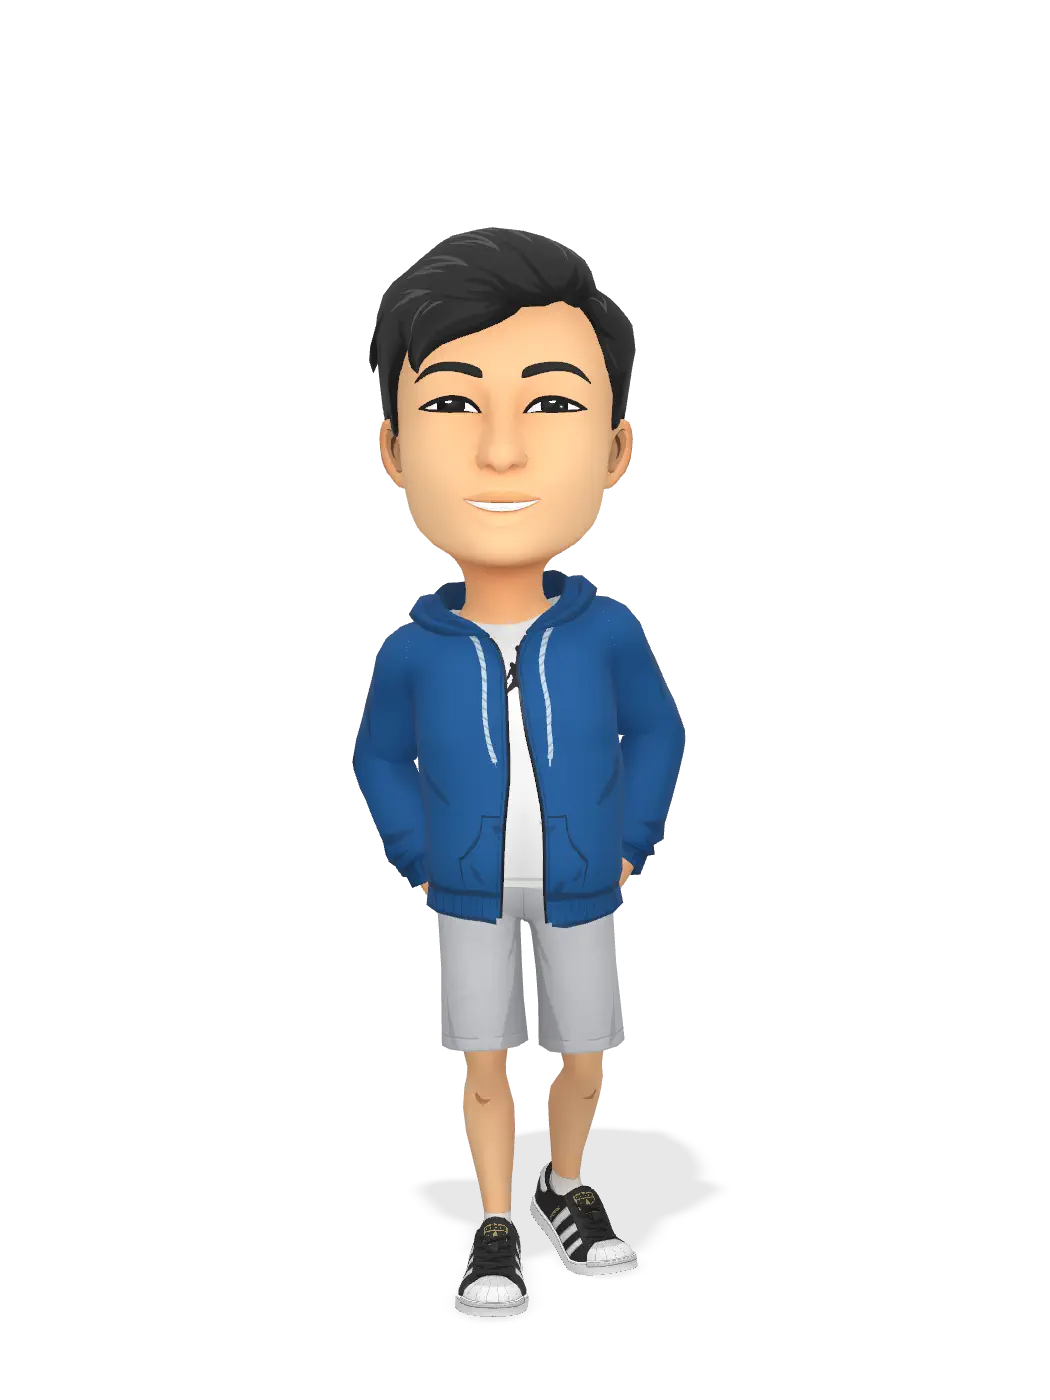 3D Bitmoji for ardianriyan avatar